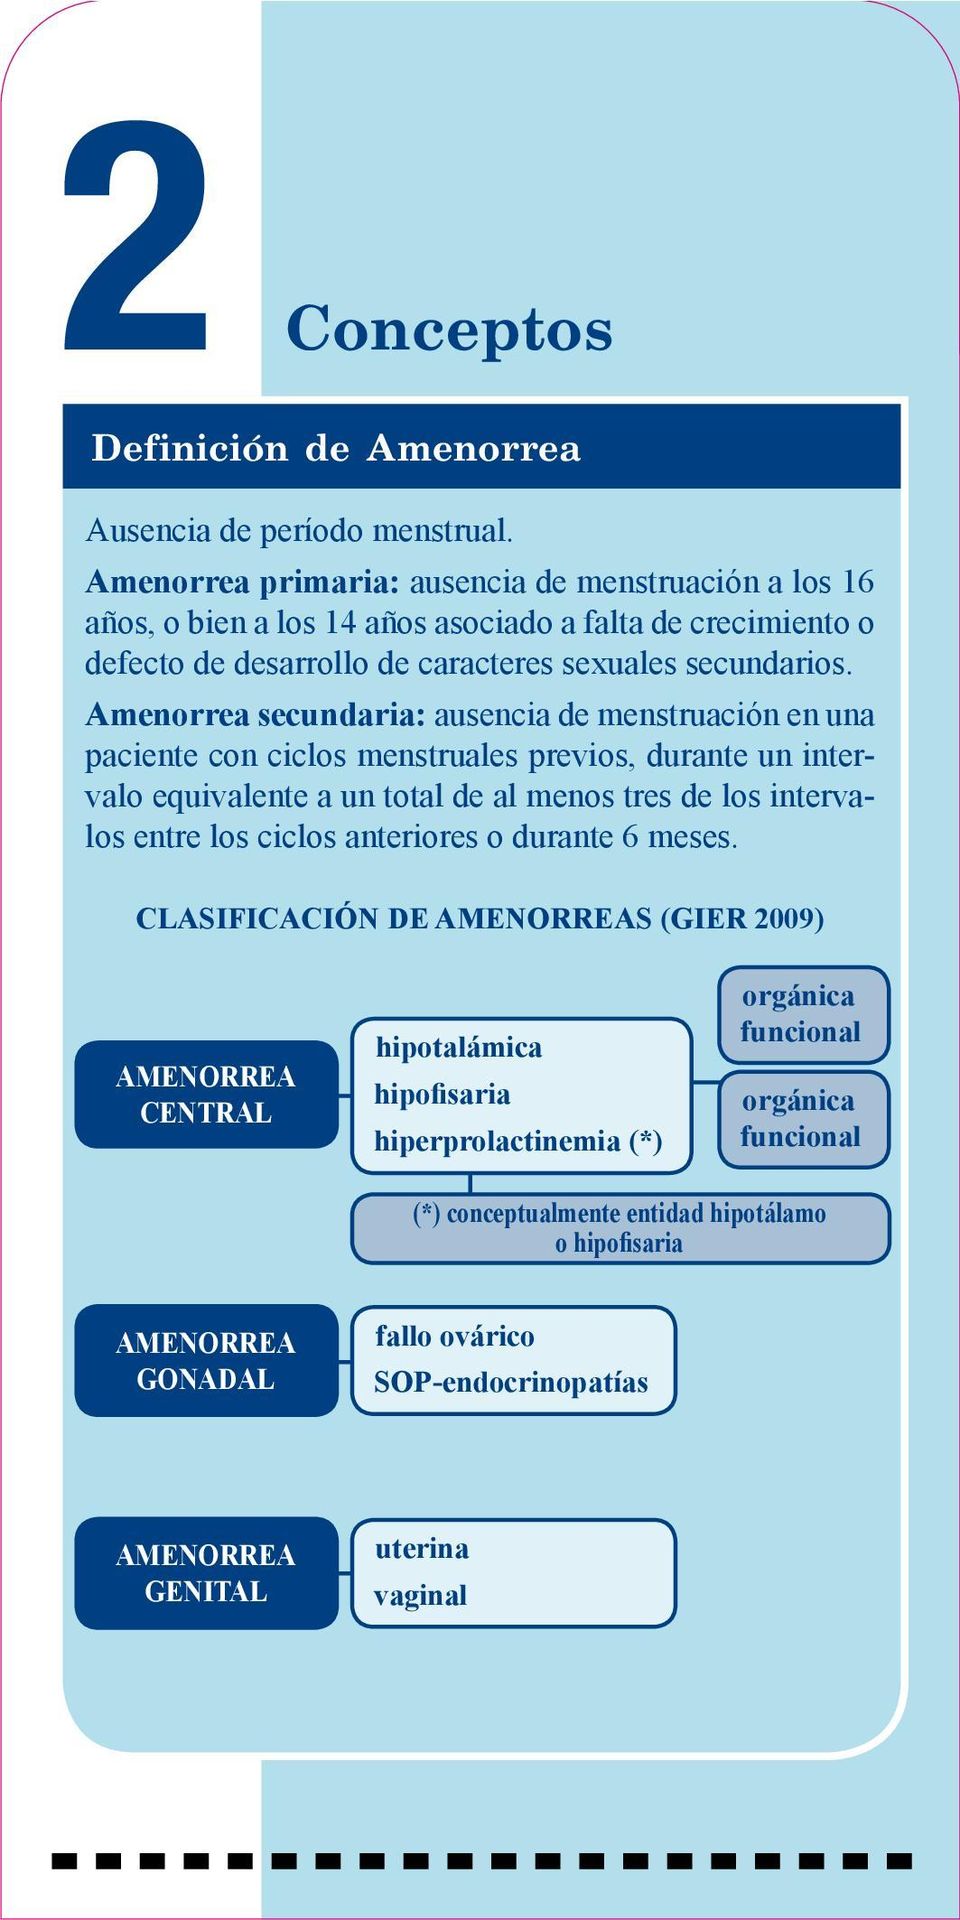 Amenorrea secundaria: ausencia de menstruación en una paciente con ciclos menstruales previos, durante un intervalo equivalente a un total de al menos tres de los intervalos